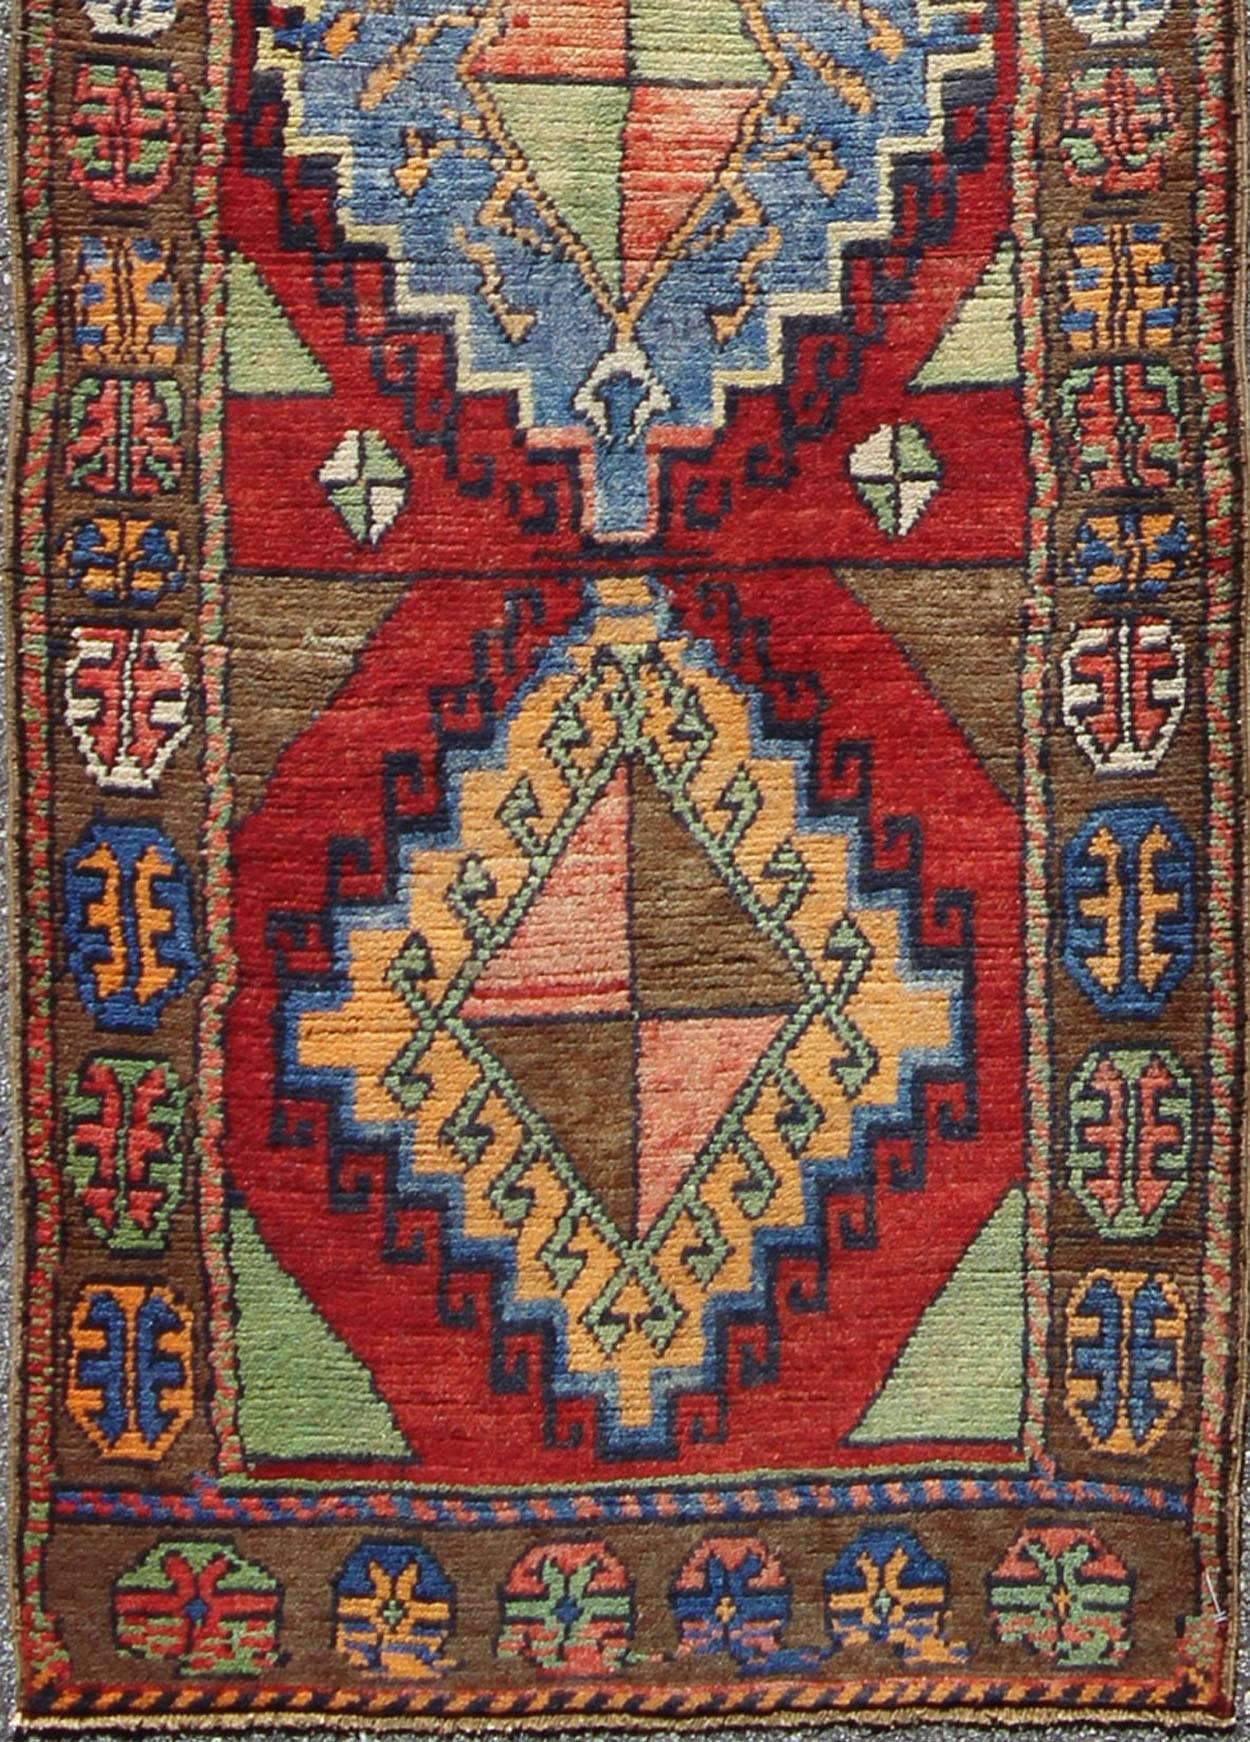 Bunter antiker türkischer Oushak mit geometrischem Stammesmuster in leuchtendem Rot und mehreren Farben, TU-VEY-4608, antiker türkischer Oushak-Läufer.

Dieser wunderschöne Oushak-Teppich glänzt mit vielen auffälligen und atemberaubenden